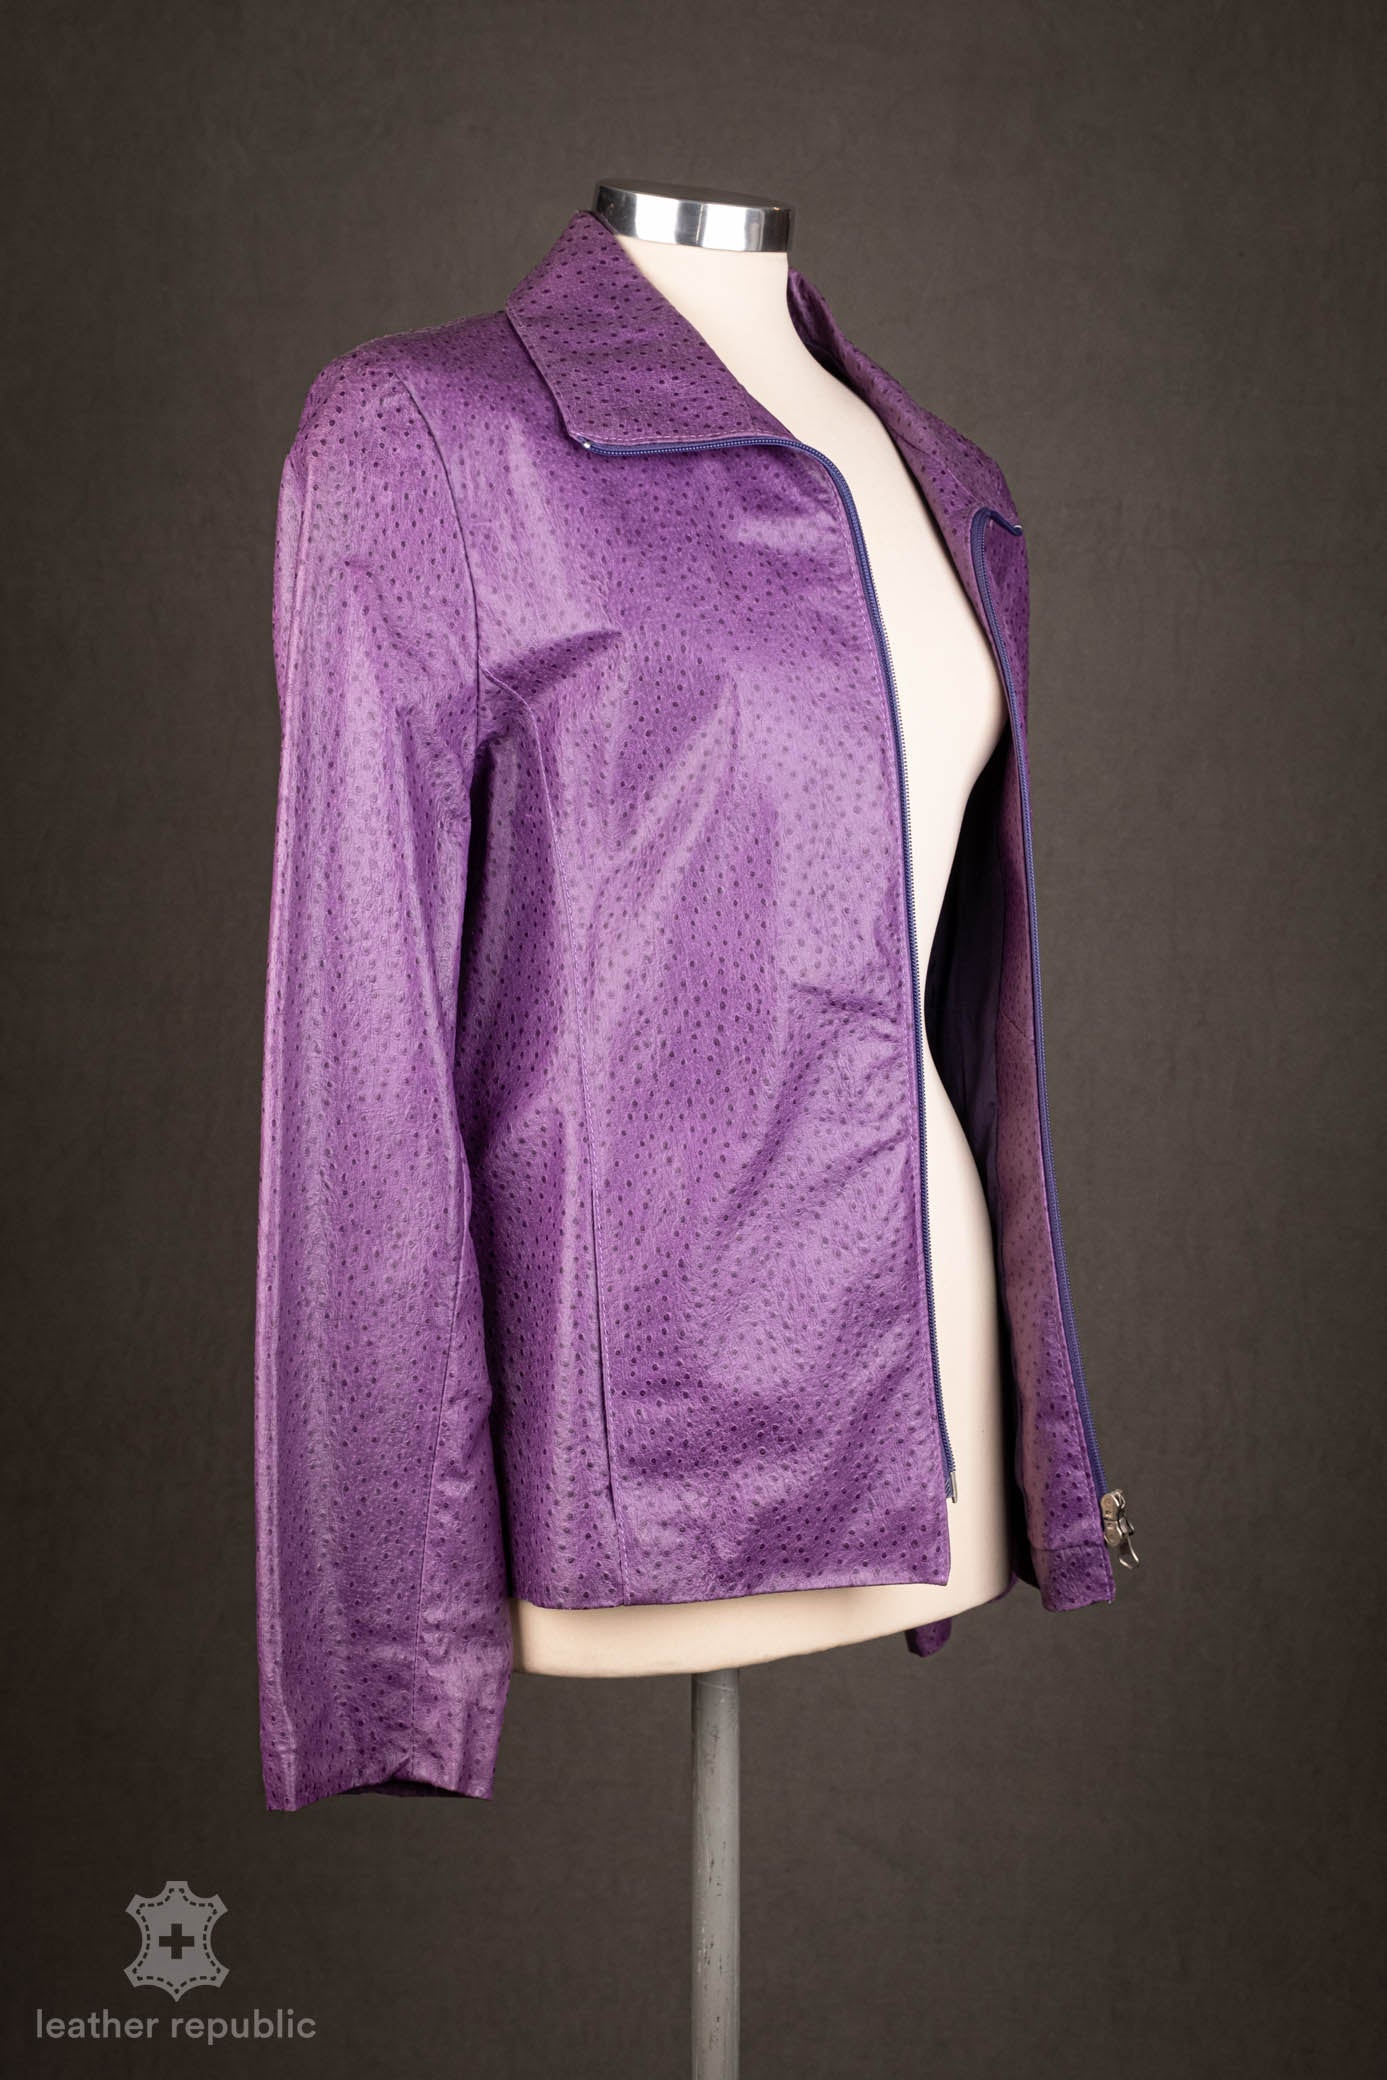 Damen Lederjacke (Leder), violett, Grösse 42/XL